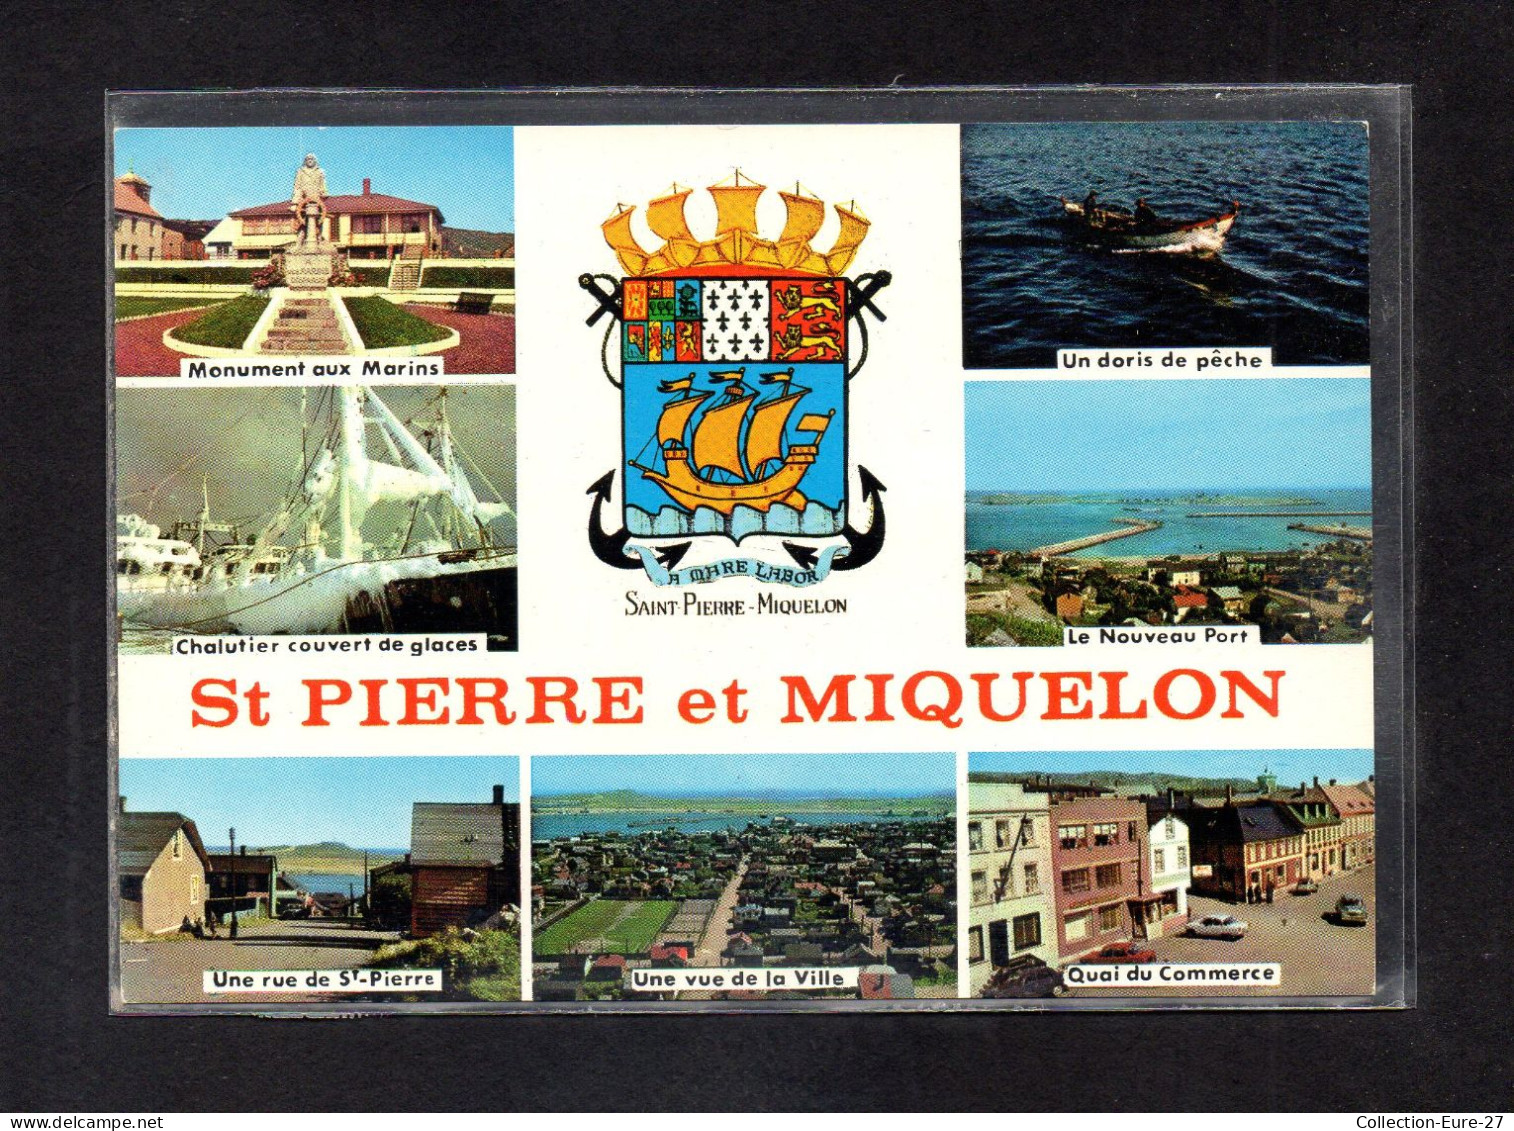 (16/04/24) SAINT PIERRE ET MIQUELON - Saint-Pierre-et-Miquelon